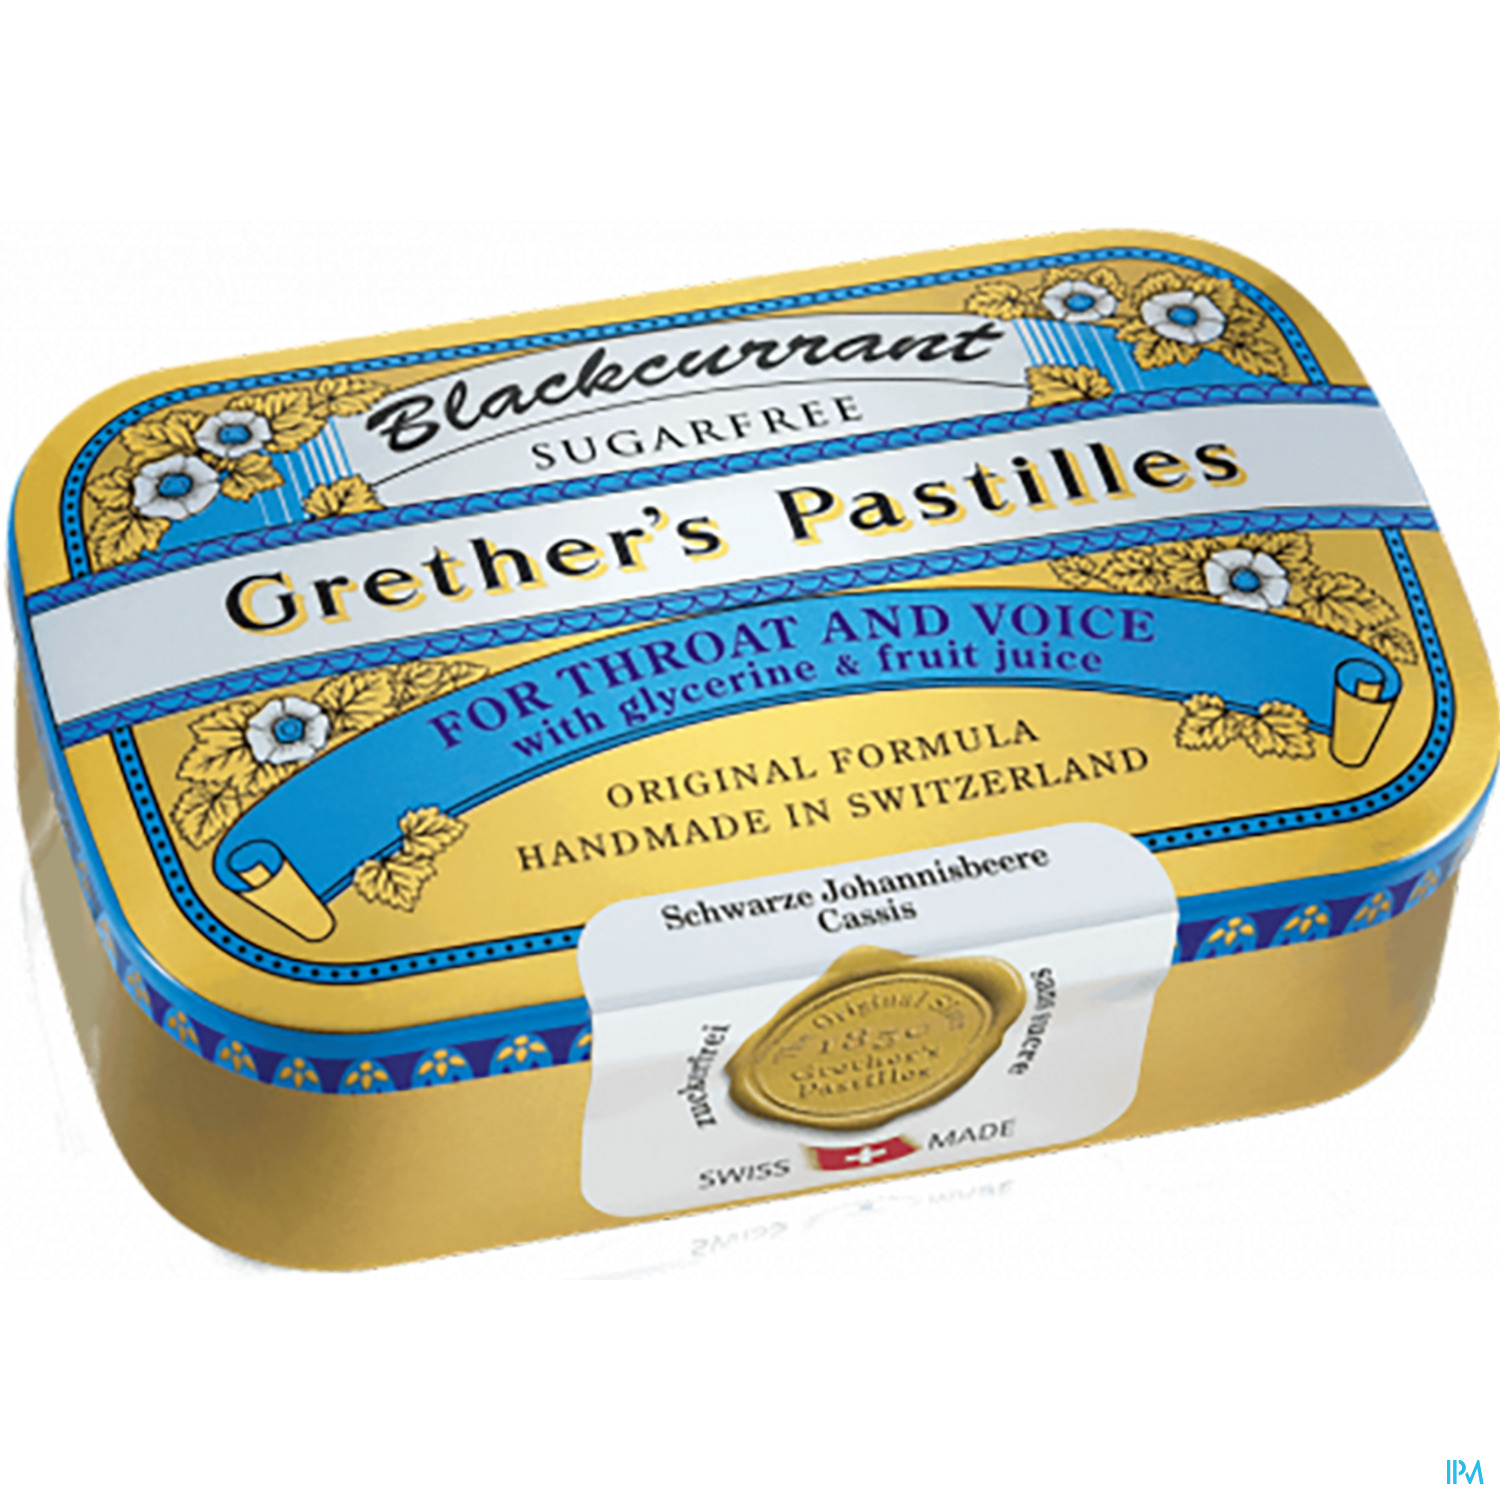 Grether's Pastilles Blackcurrant Zuckerfrei 110g